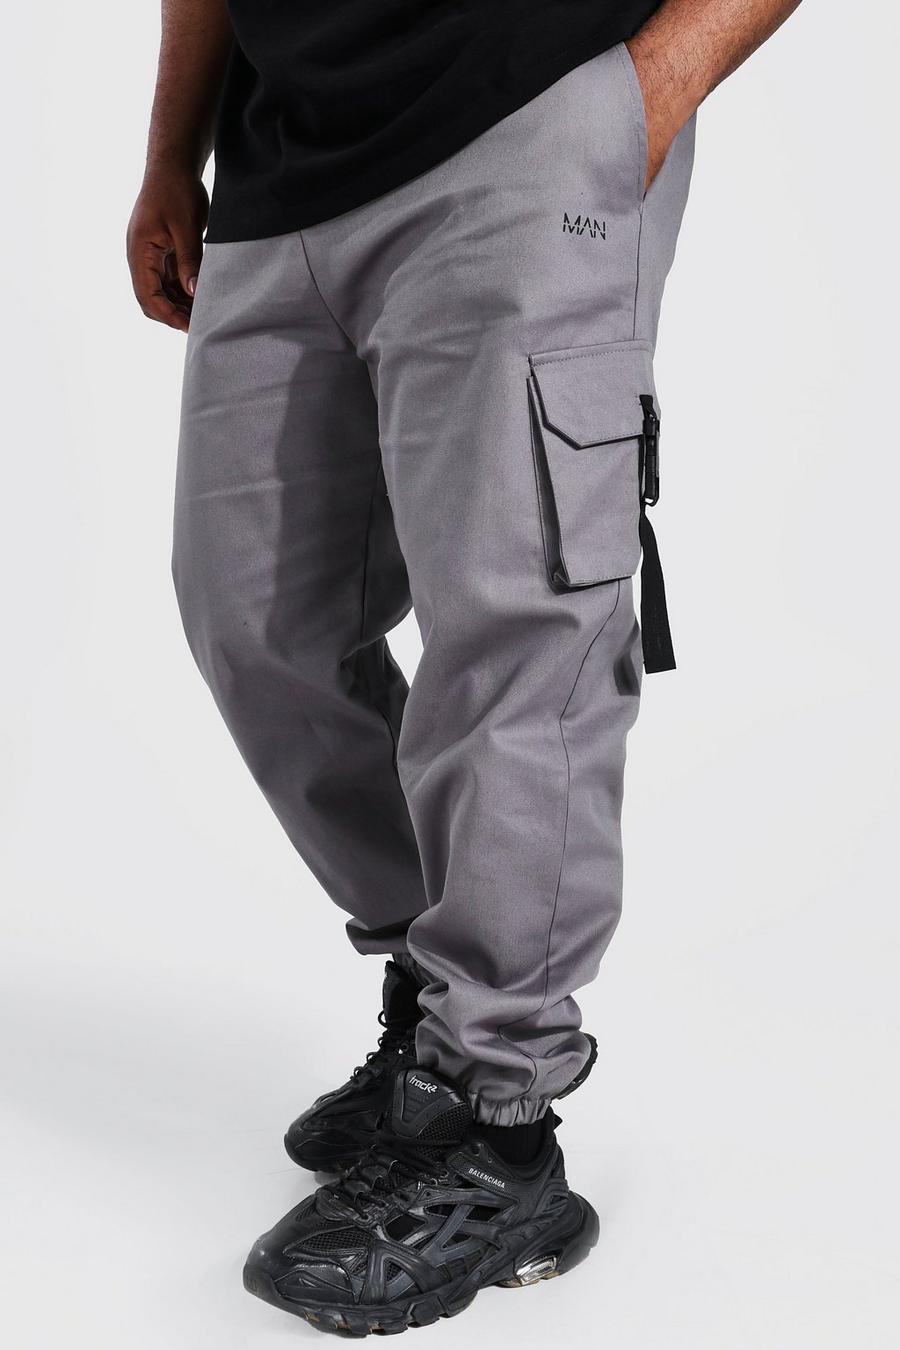 Pantaloni tuta Plus Size Original Man in twill con fibbia, Slate grigio